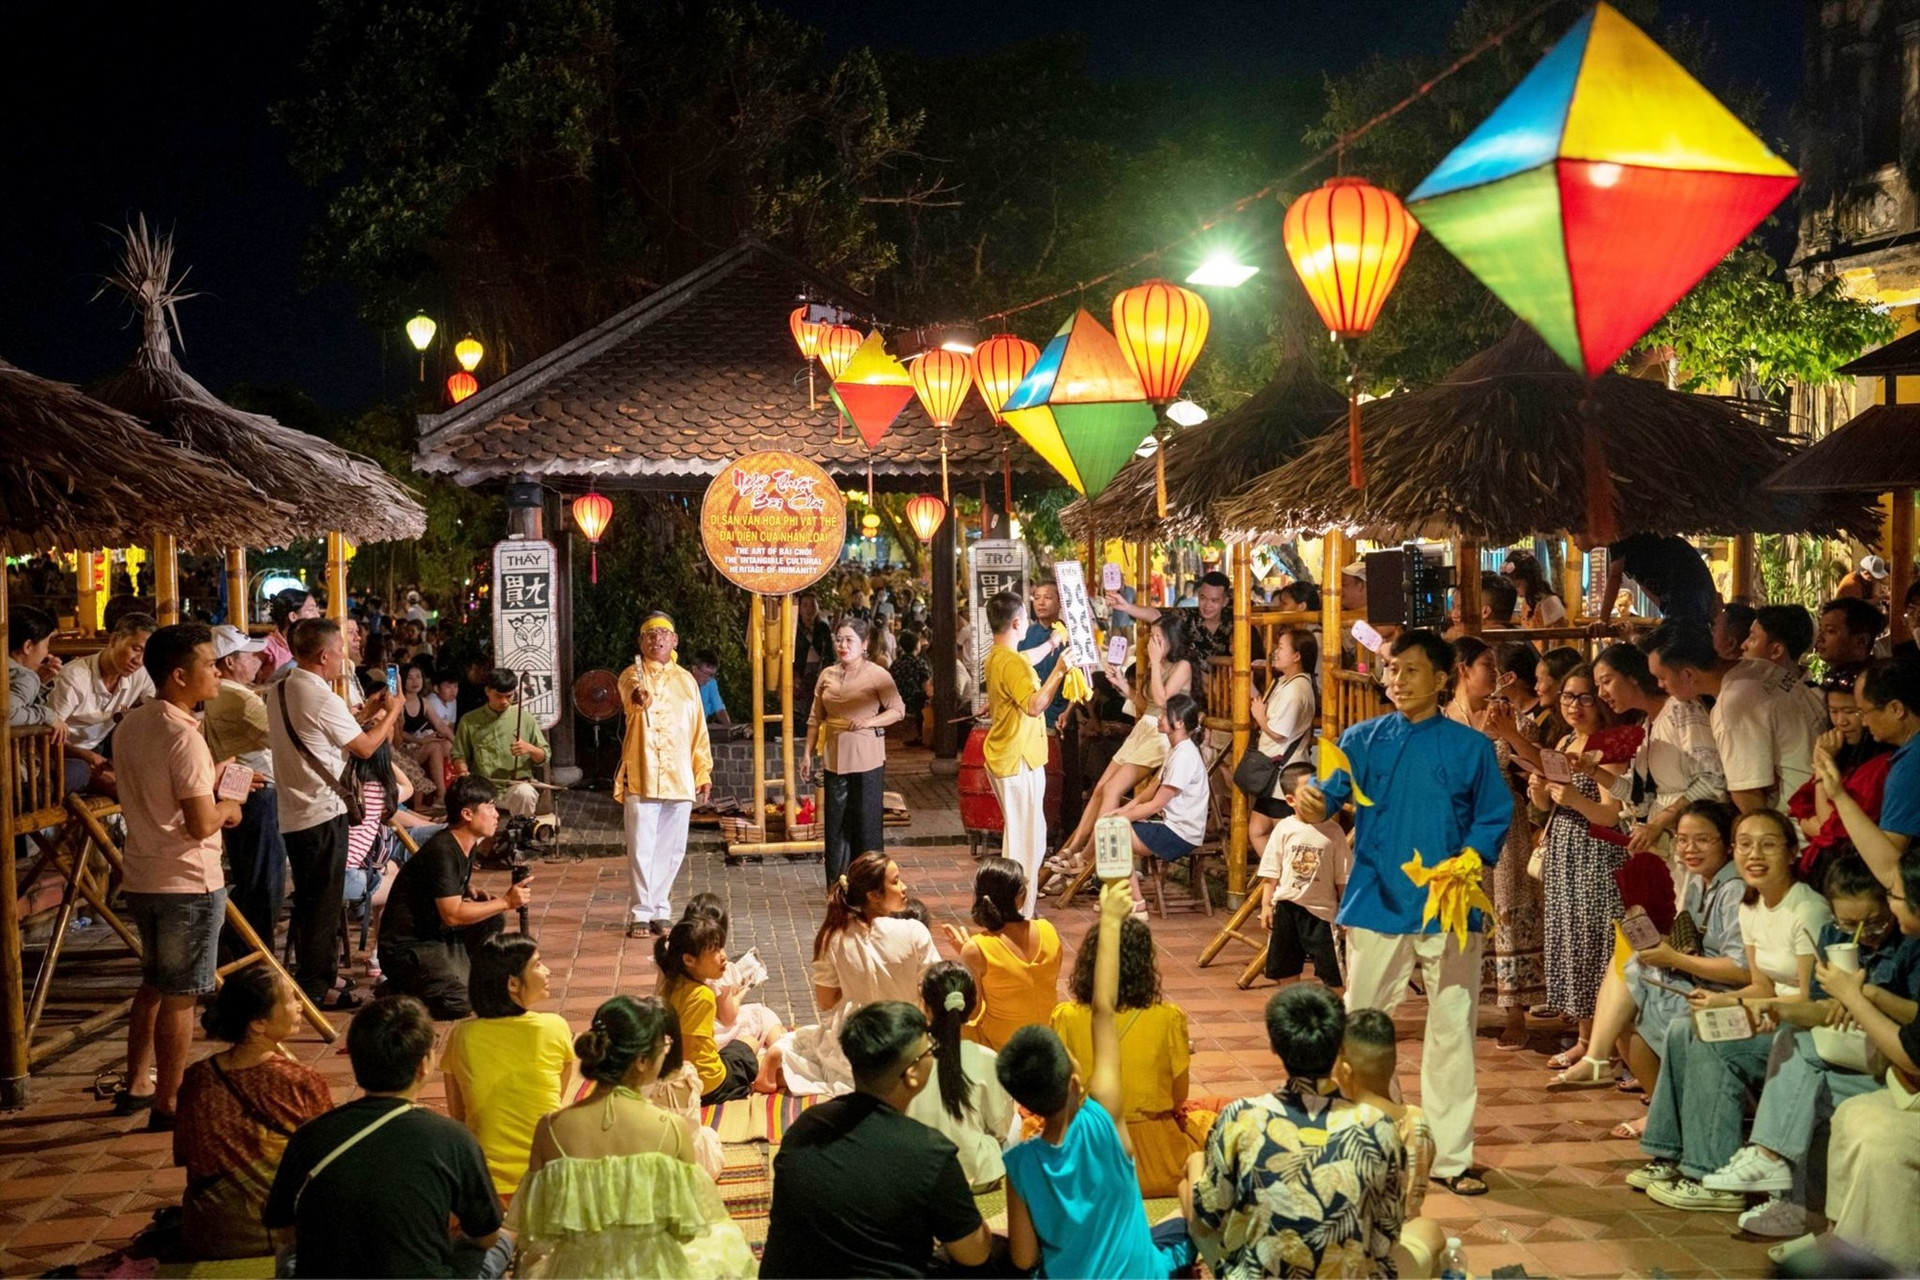 Diễn xướng Bài chòi là sản phẩm du lịch văn hóa tổ chức thường xuyên trong chương trình “Đêm phố cổ”.